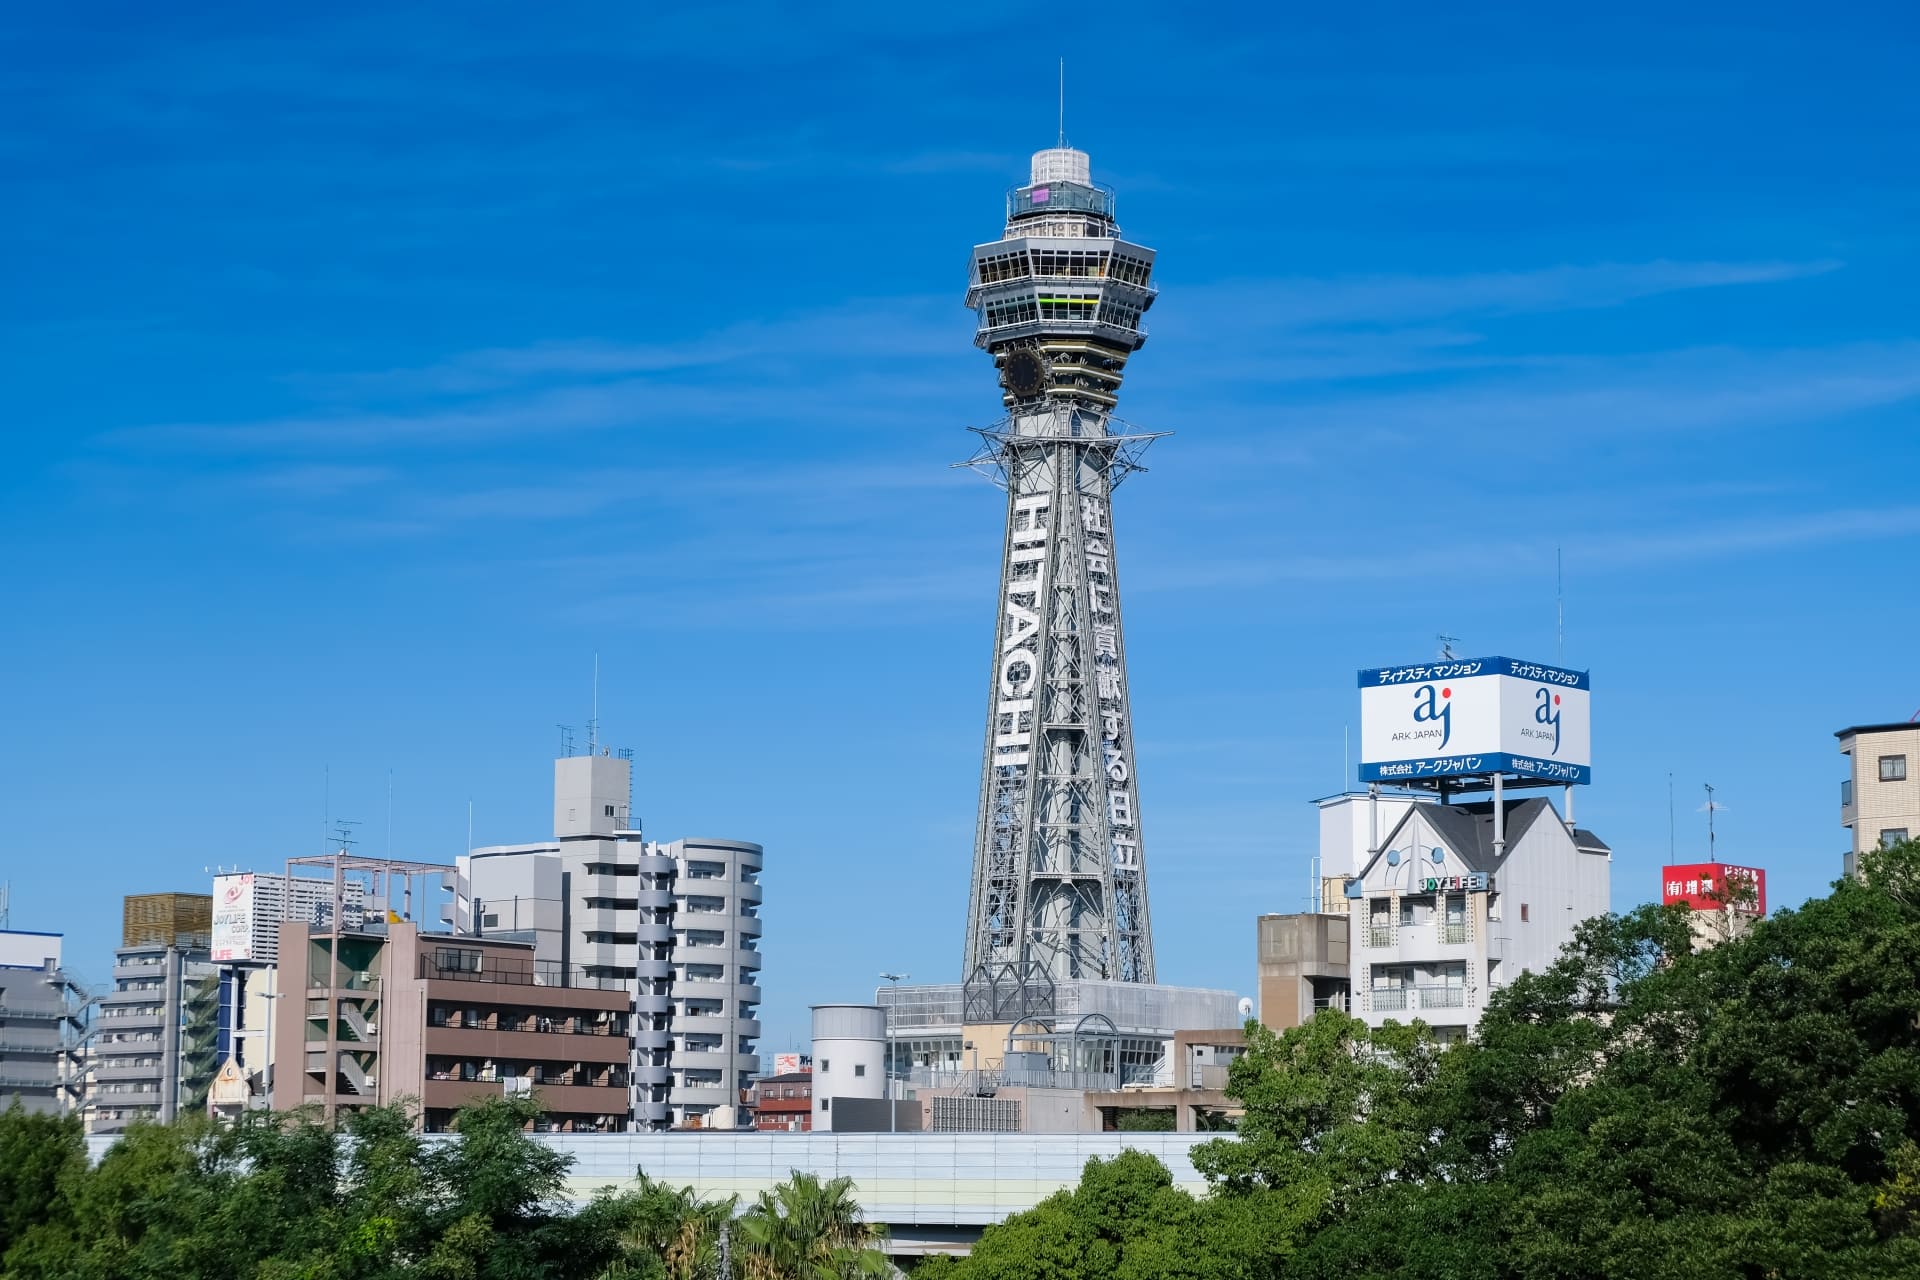 ジャパンキャンピングカーレンタルセンター 「大阪市」に2拠点目開設！ 拡大する関西でのキャンピングカー人気取り込みへ